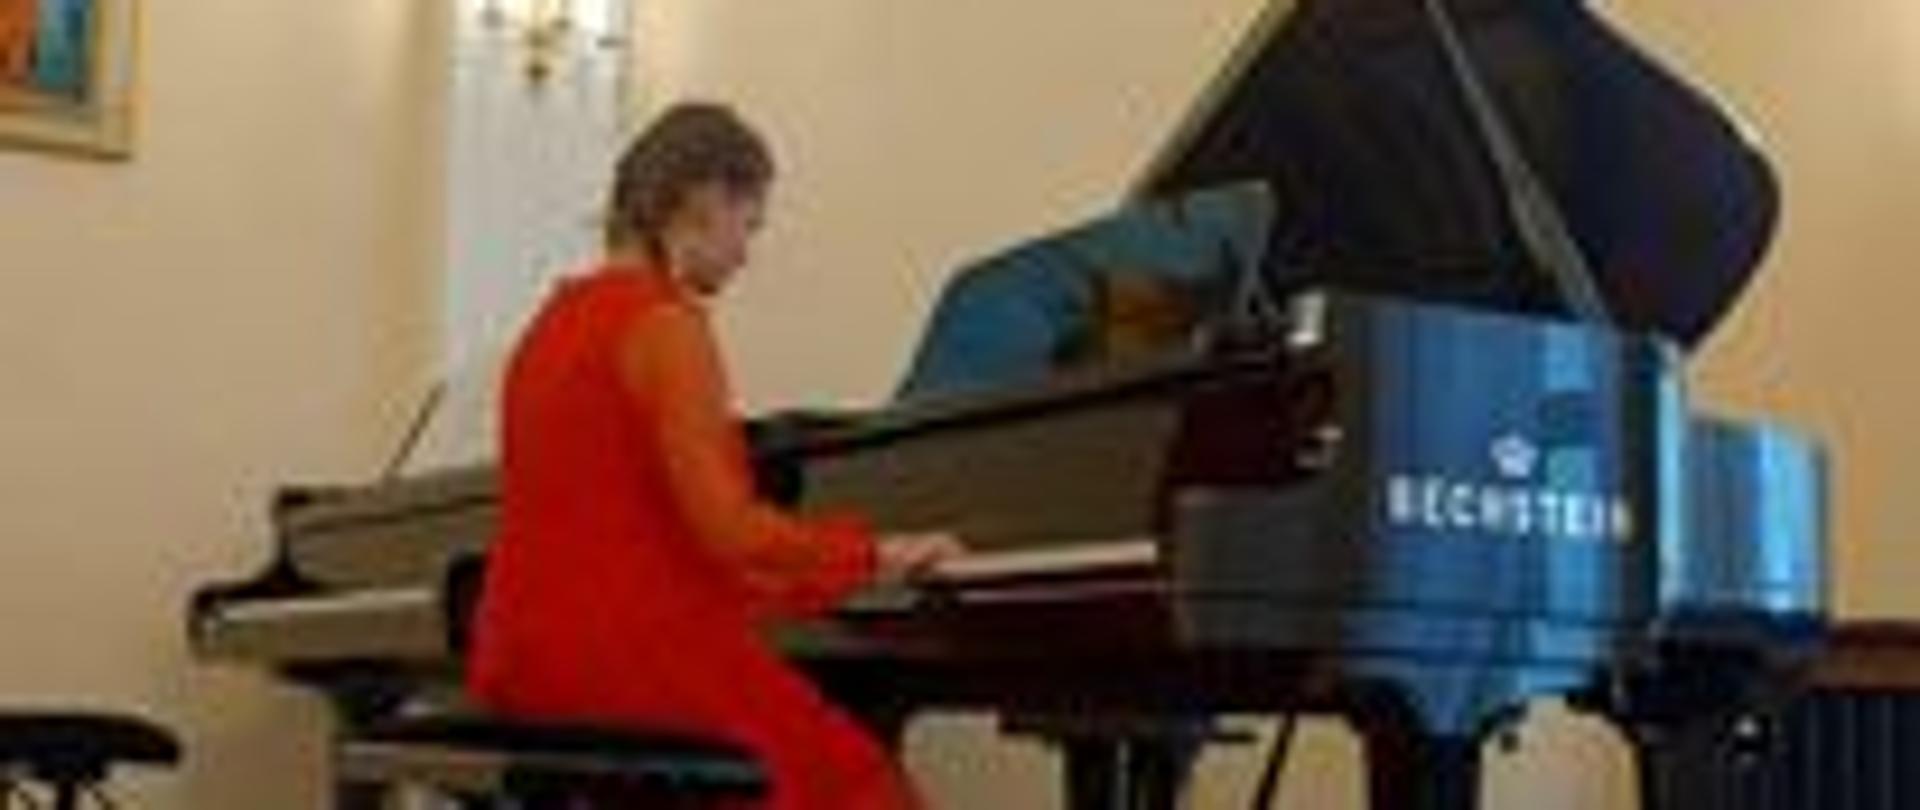 Zdjęcie przedstawia kobietę w czerwonej sukni, grającą na fortepianie na sali koncertowej